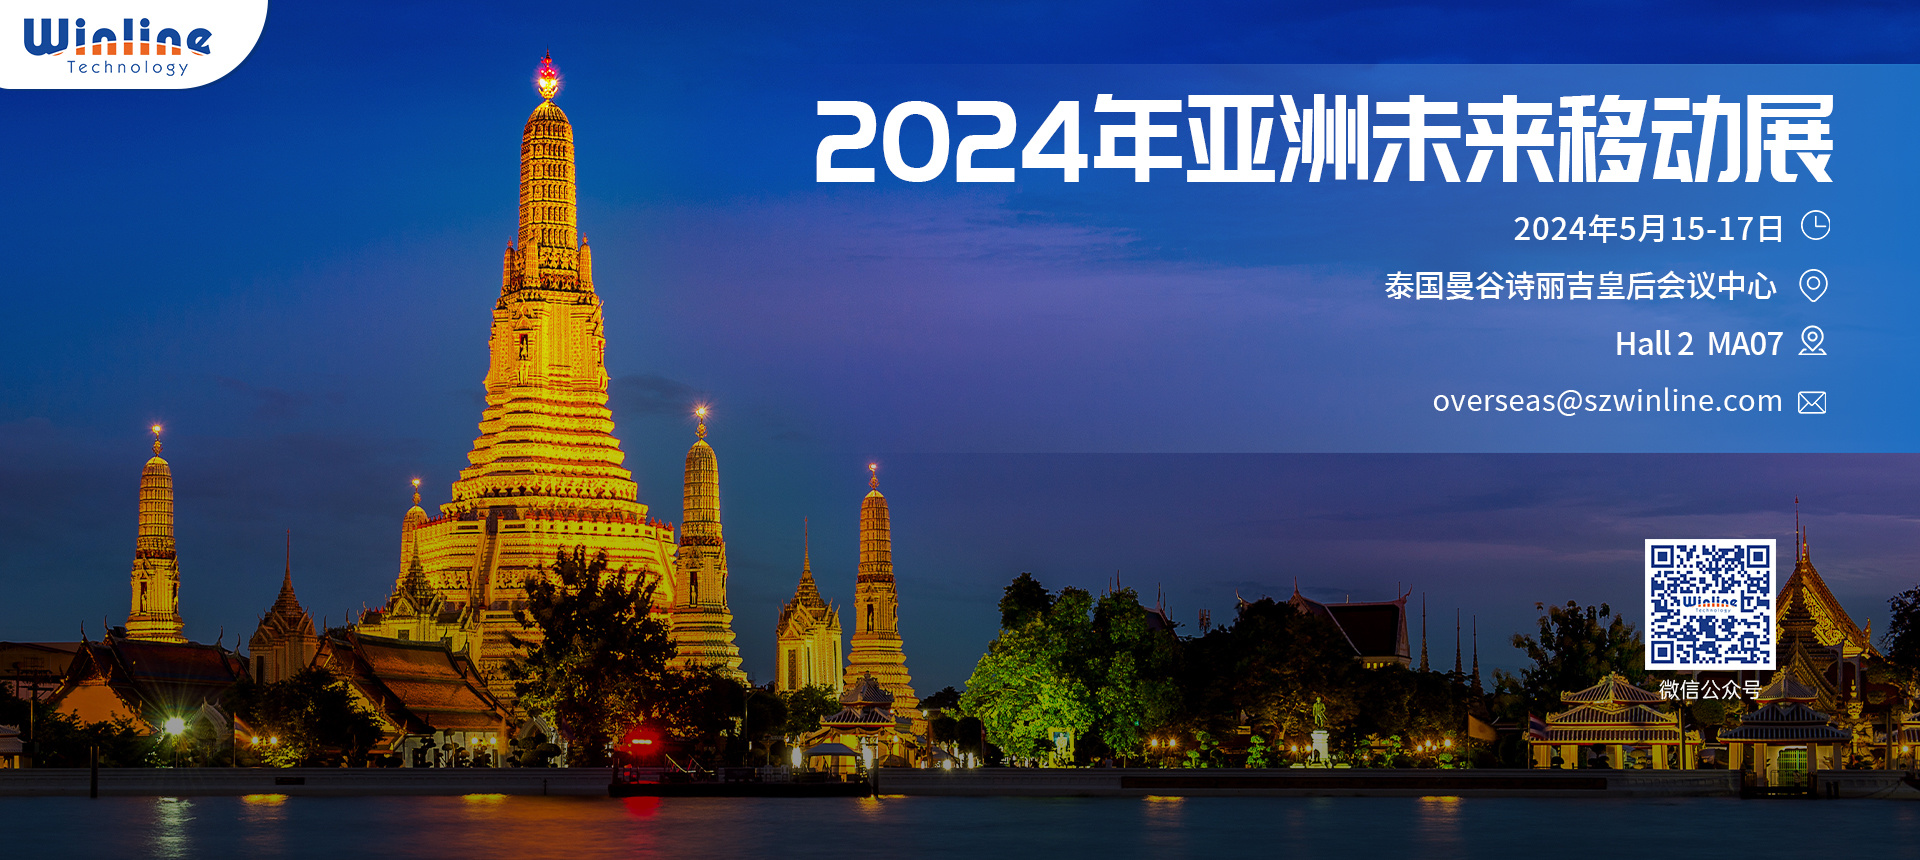 2024亚洲未来移动展邀请函